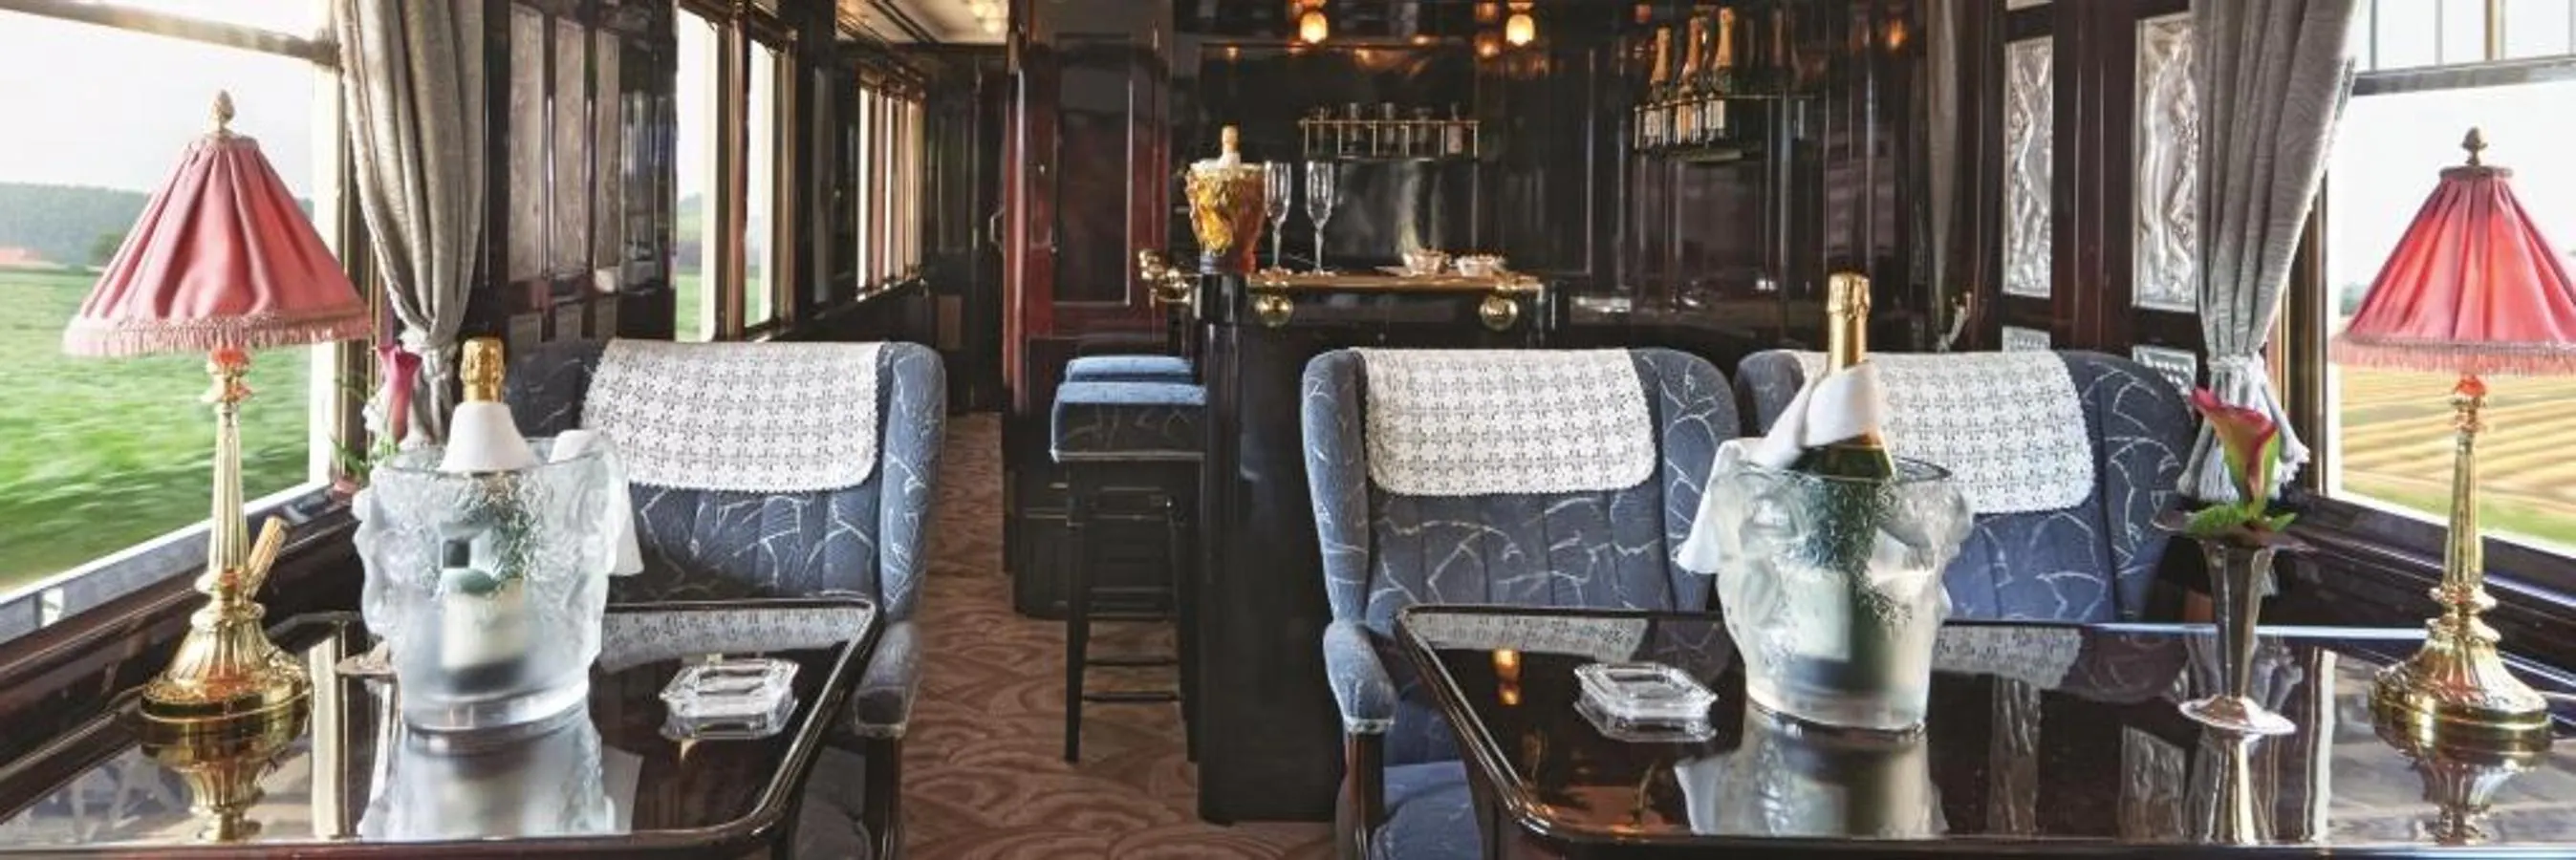 Venice Orient Express. La experiencia a bordo es digna de los ricos personajes de la novela de Christie: incluye traslado gratuito en un coche de lujo hasta el tren, botellas de champagne, mayordomo y albornoces y sábanas de lujo en las suites